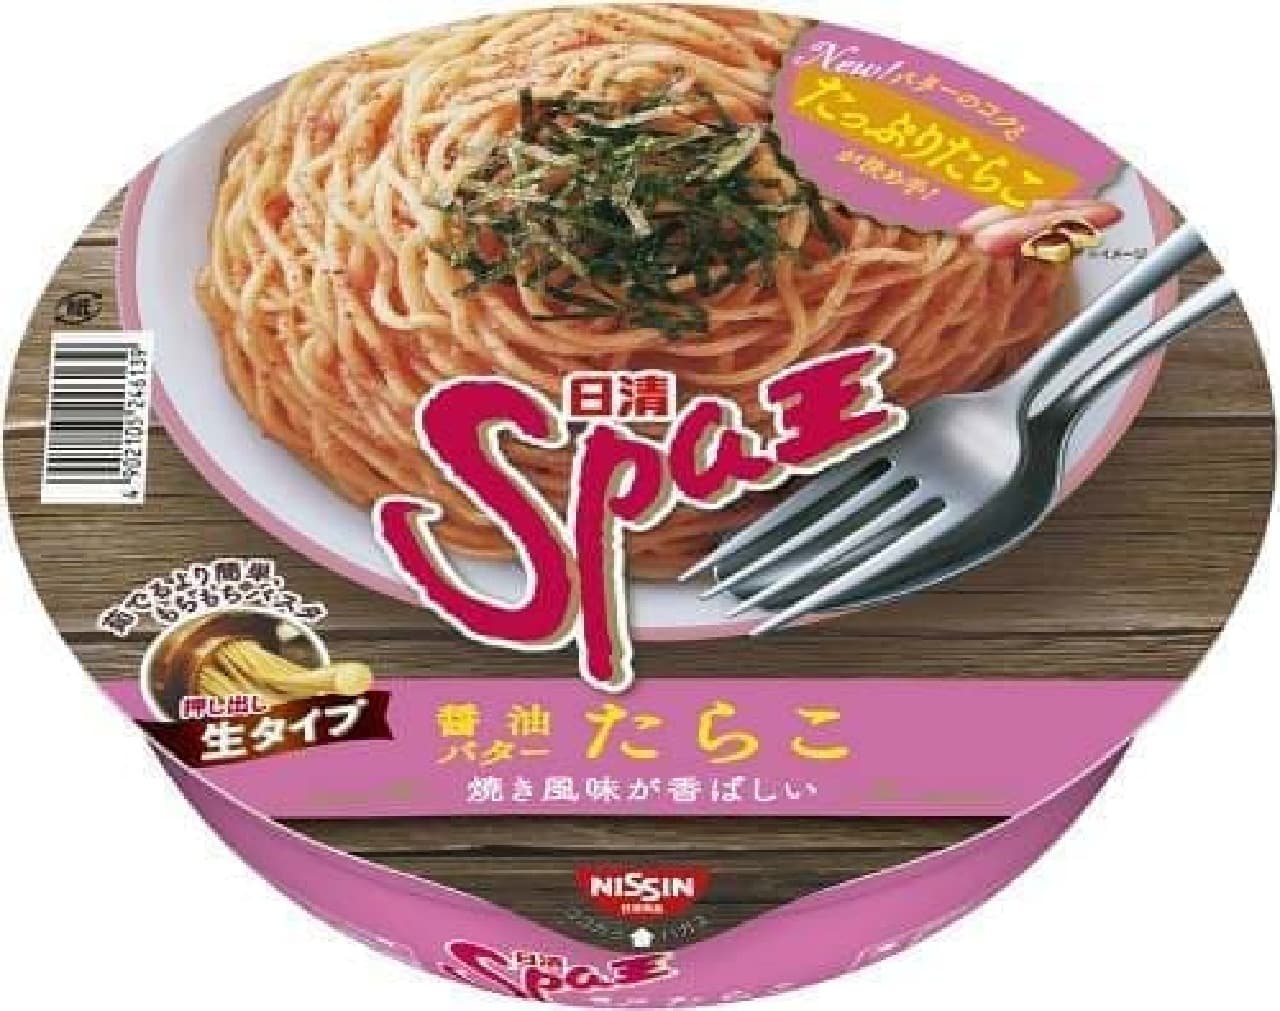 日清食品「日清Spa王 醤油バターたらこ」